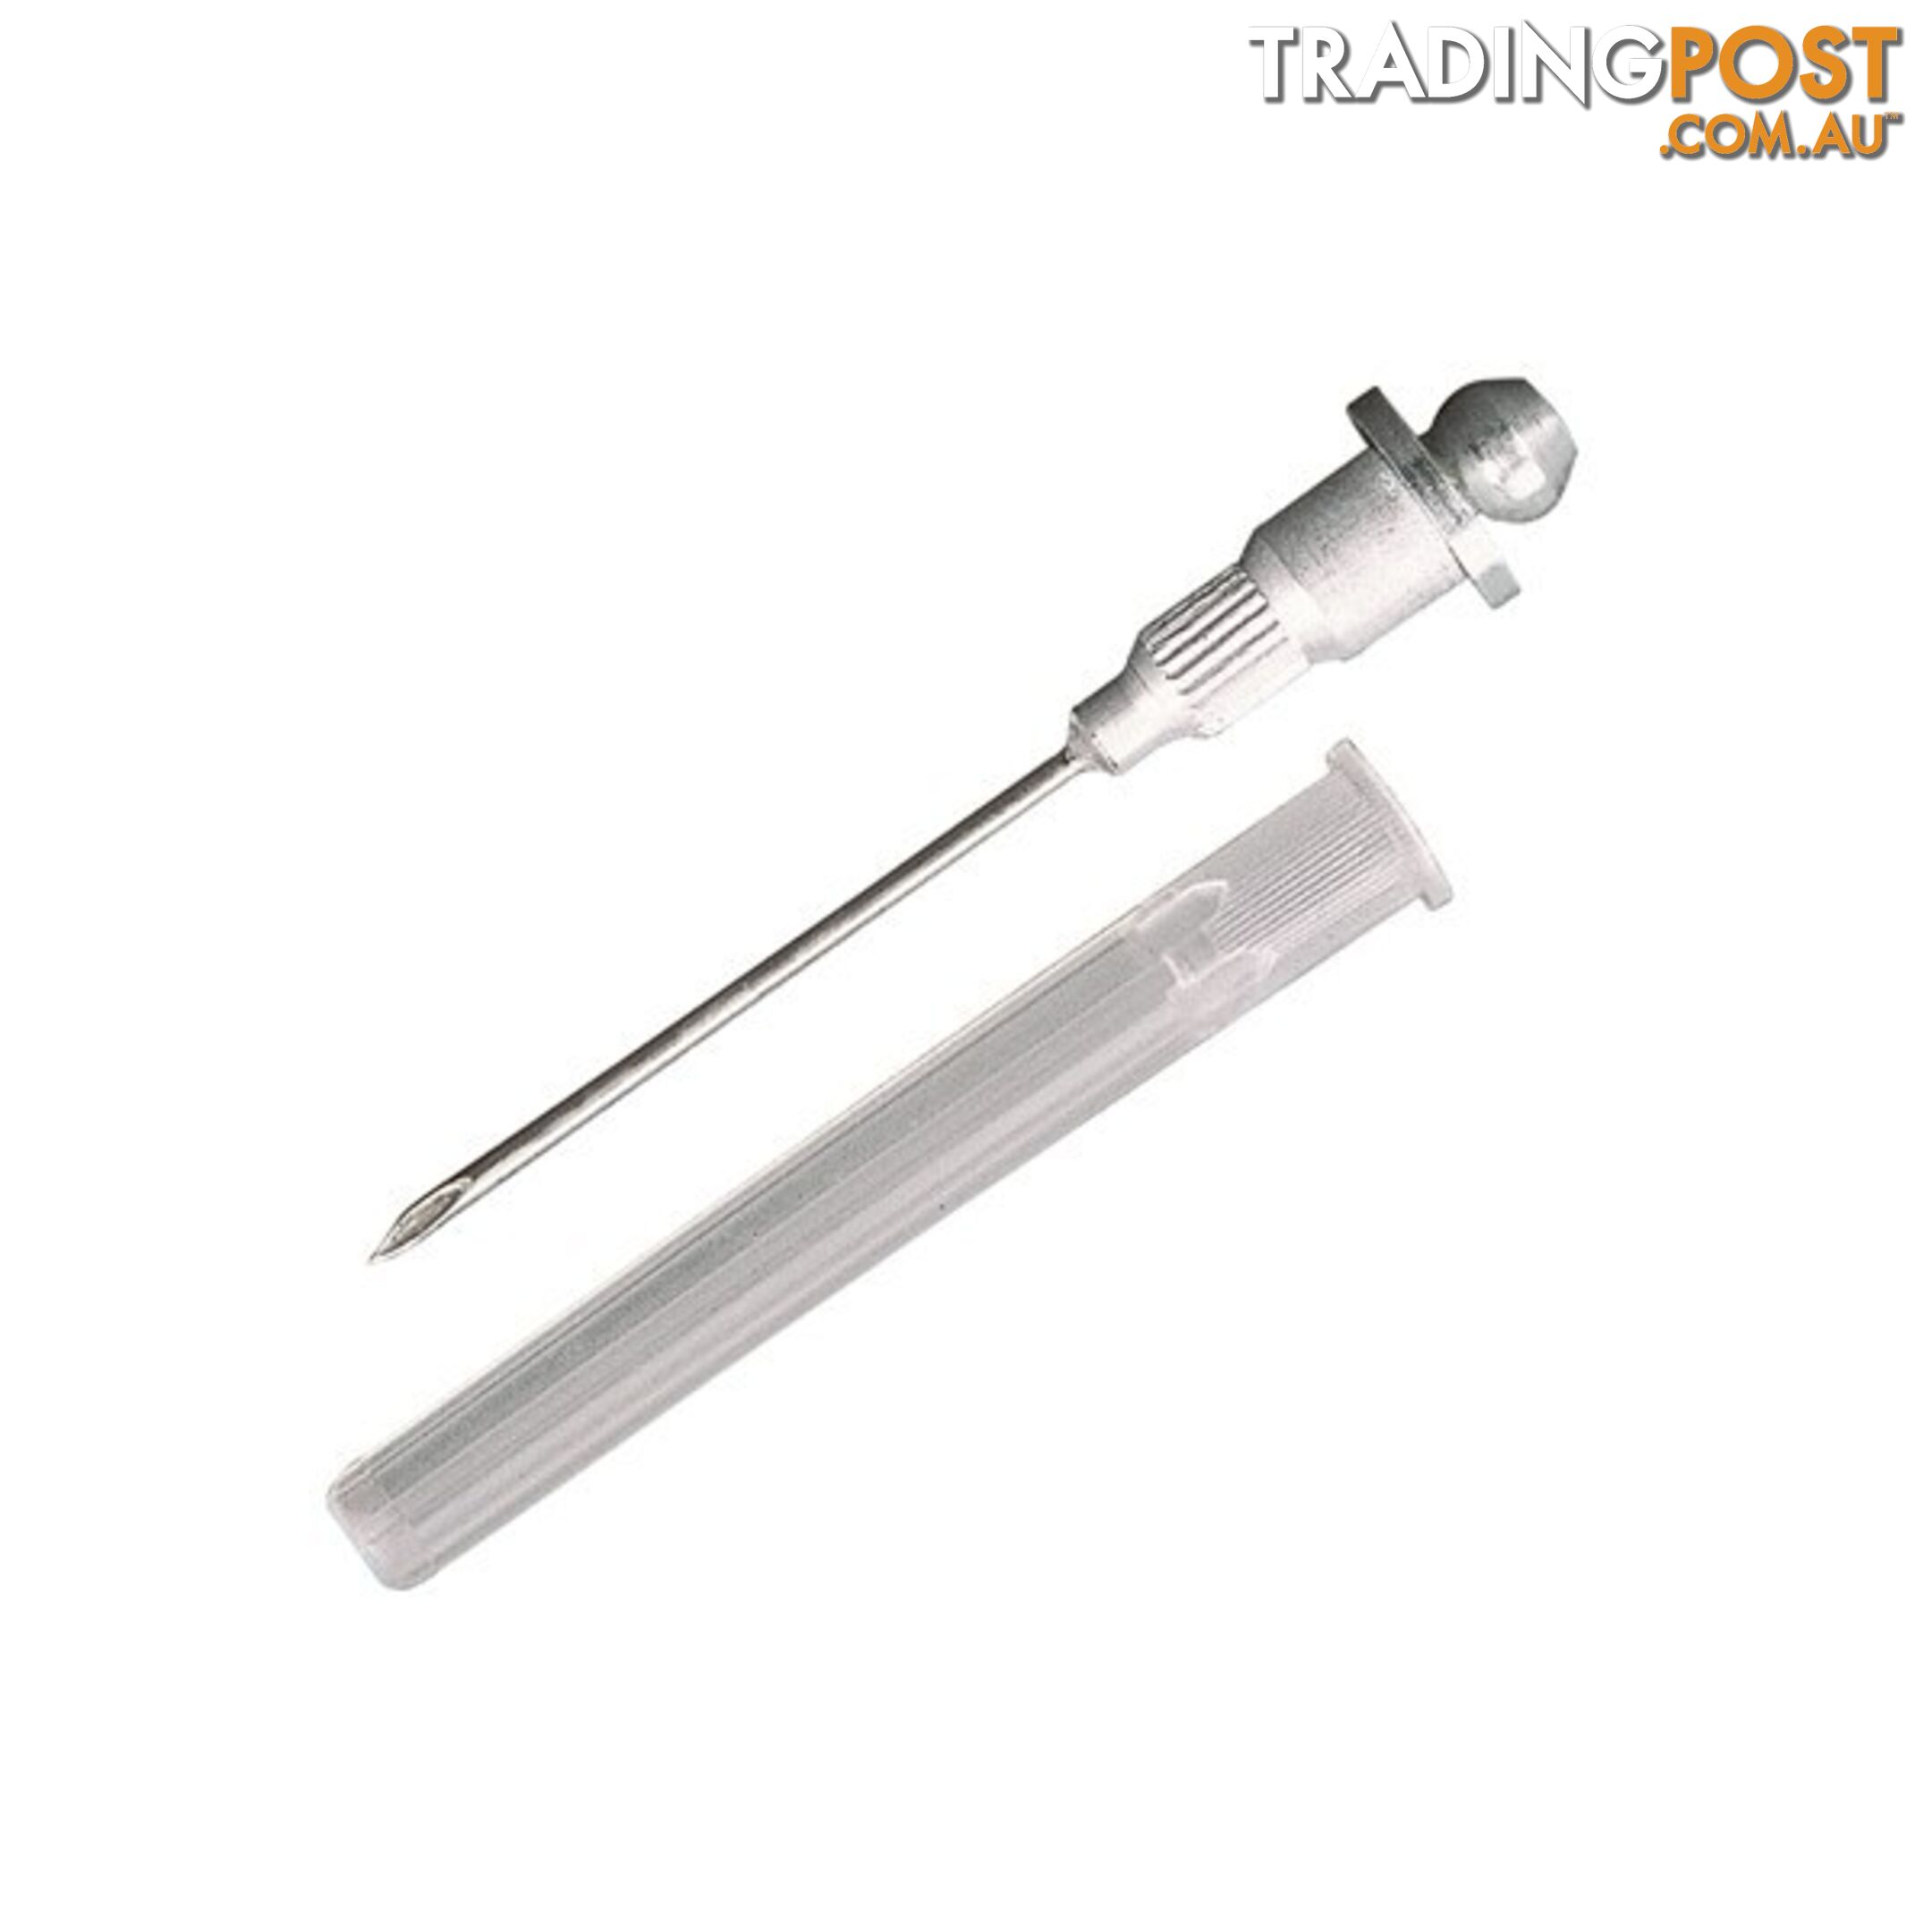 Toledo Grease Injector Needle  - 21 Gauge SKU - 305238